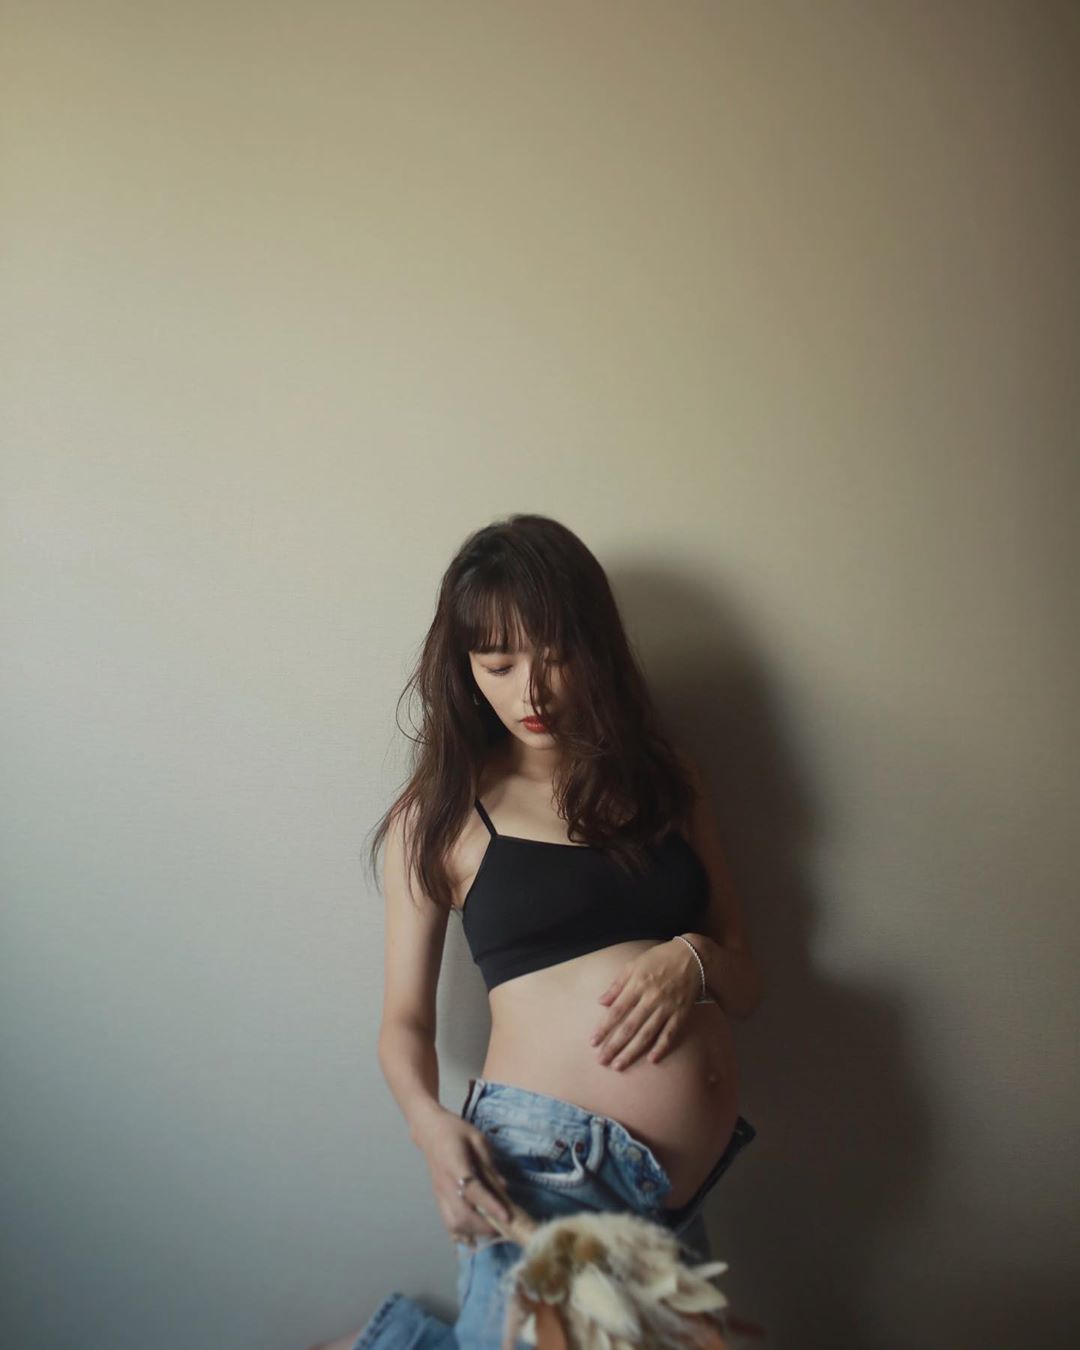 マタニティフォト 近藤千尋さんのフォト 流石モデルですねw 幸せそうでとても綺麗です 妊娠フォトを公開した芸能人 まとめブログ ましゃましゃ